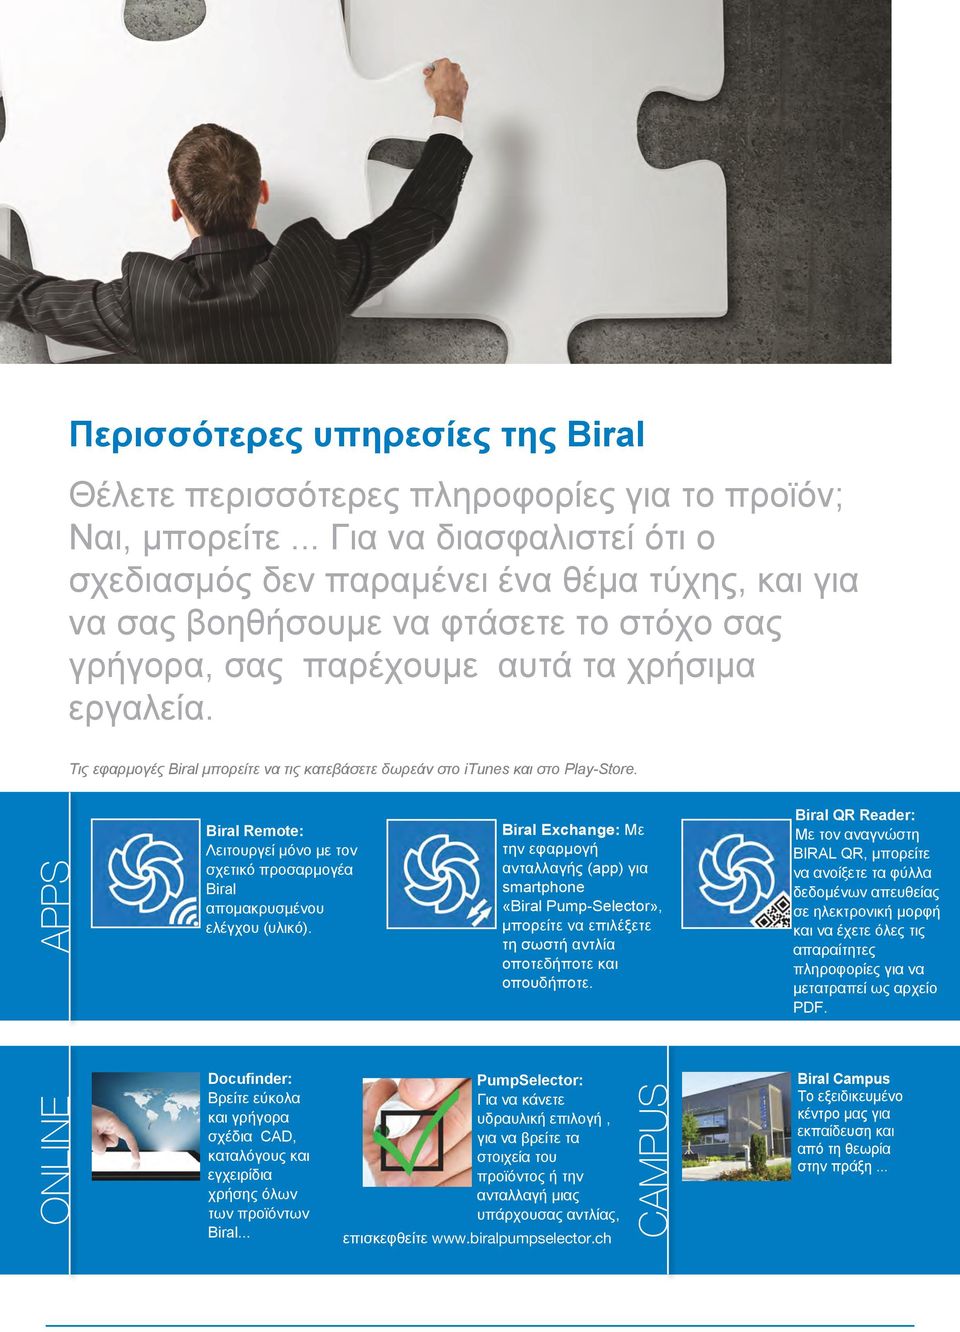 Τις εφαρμογές Biral μπορείτε να τις κατεβάσετε δωρεάν στο itunes και στο Play-Store. APPS Biral Remote: Λειτουργεί μόνο με τον σχετικό προσαρμογέα Biral απομακρυσμένου ελέγχου (υλικό).